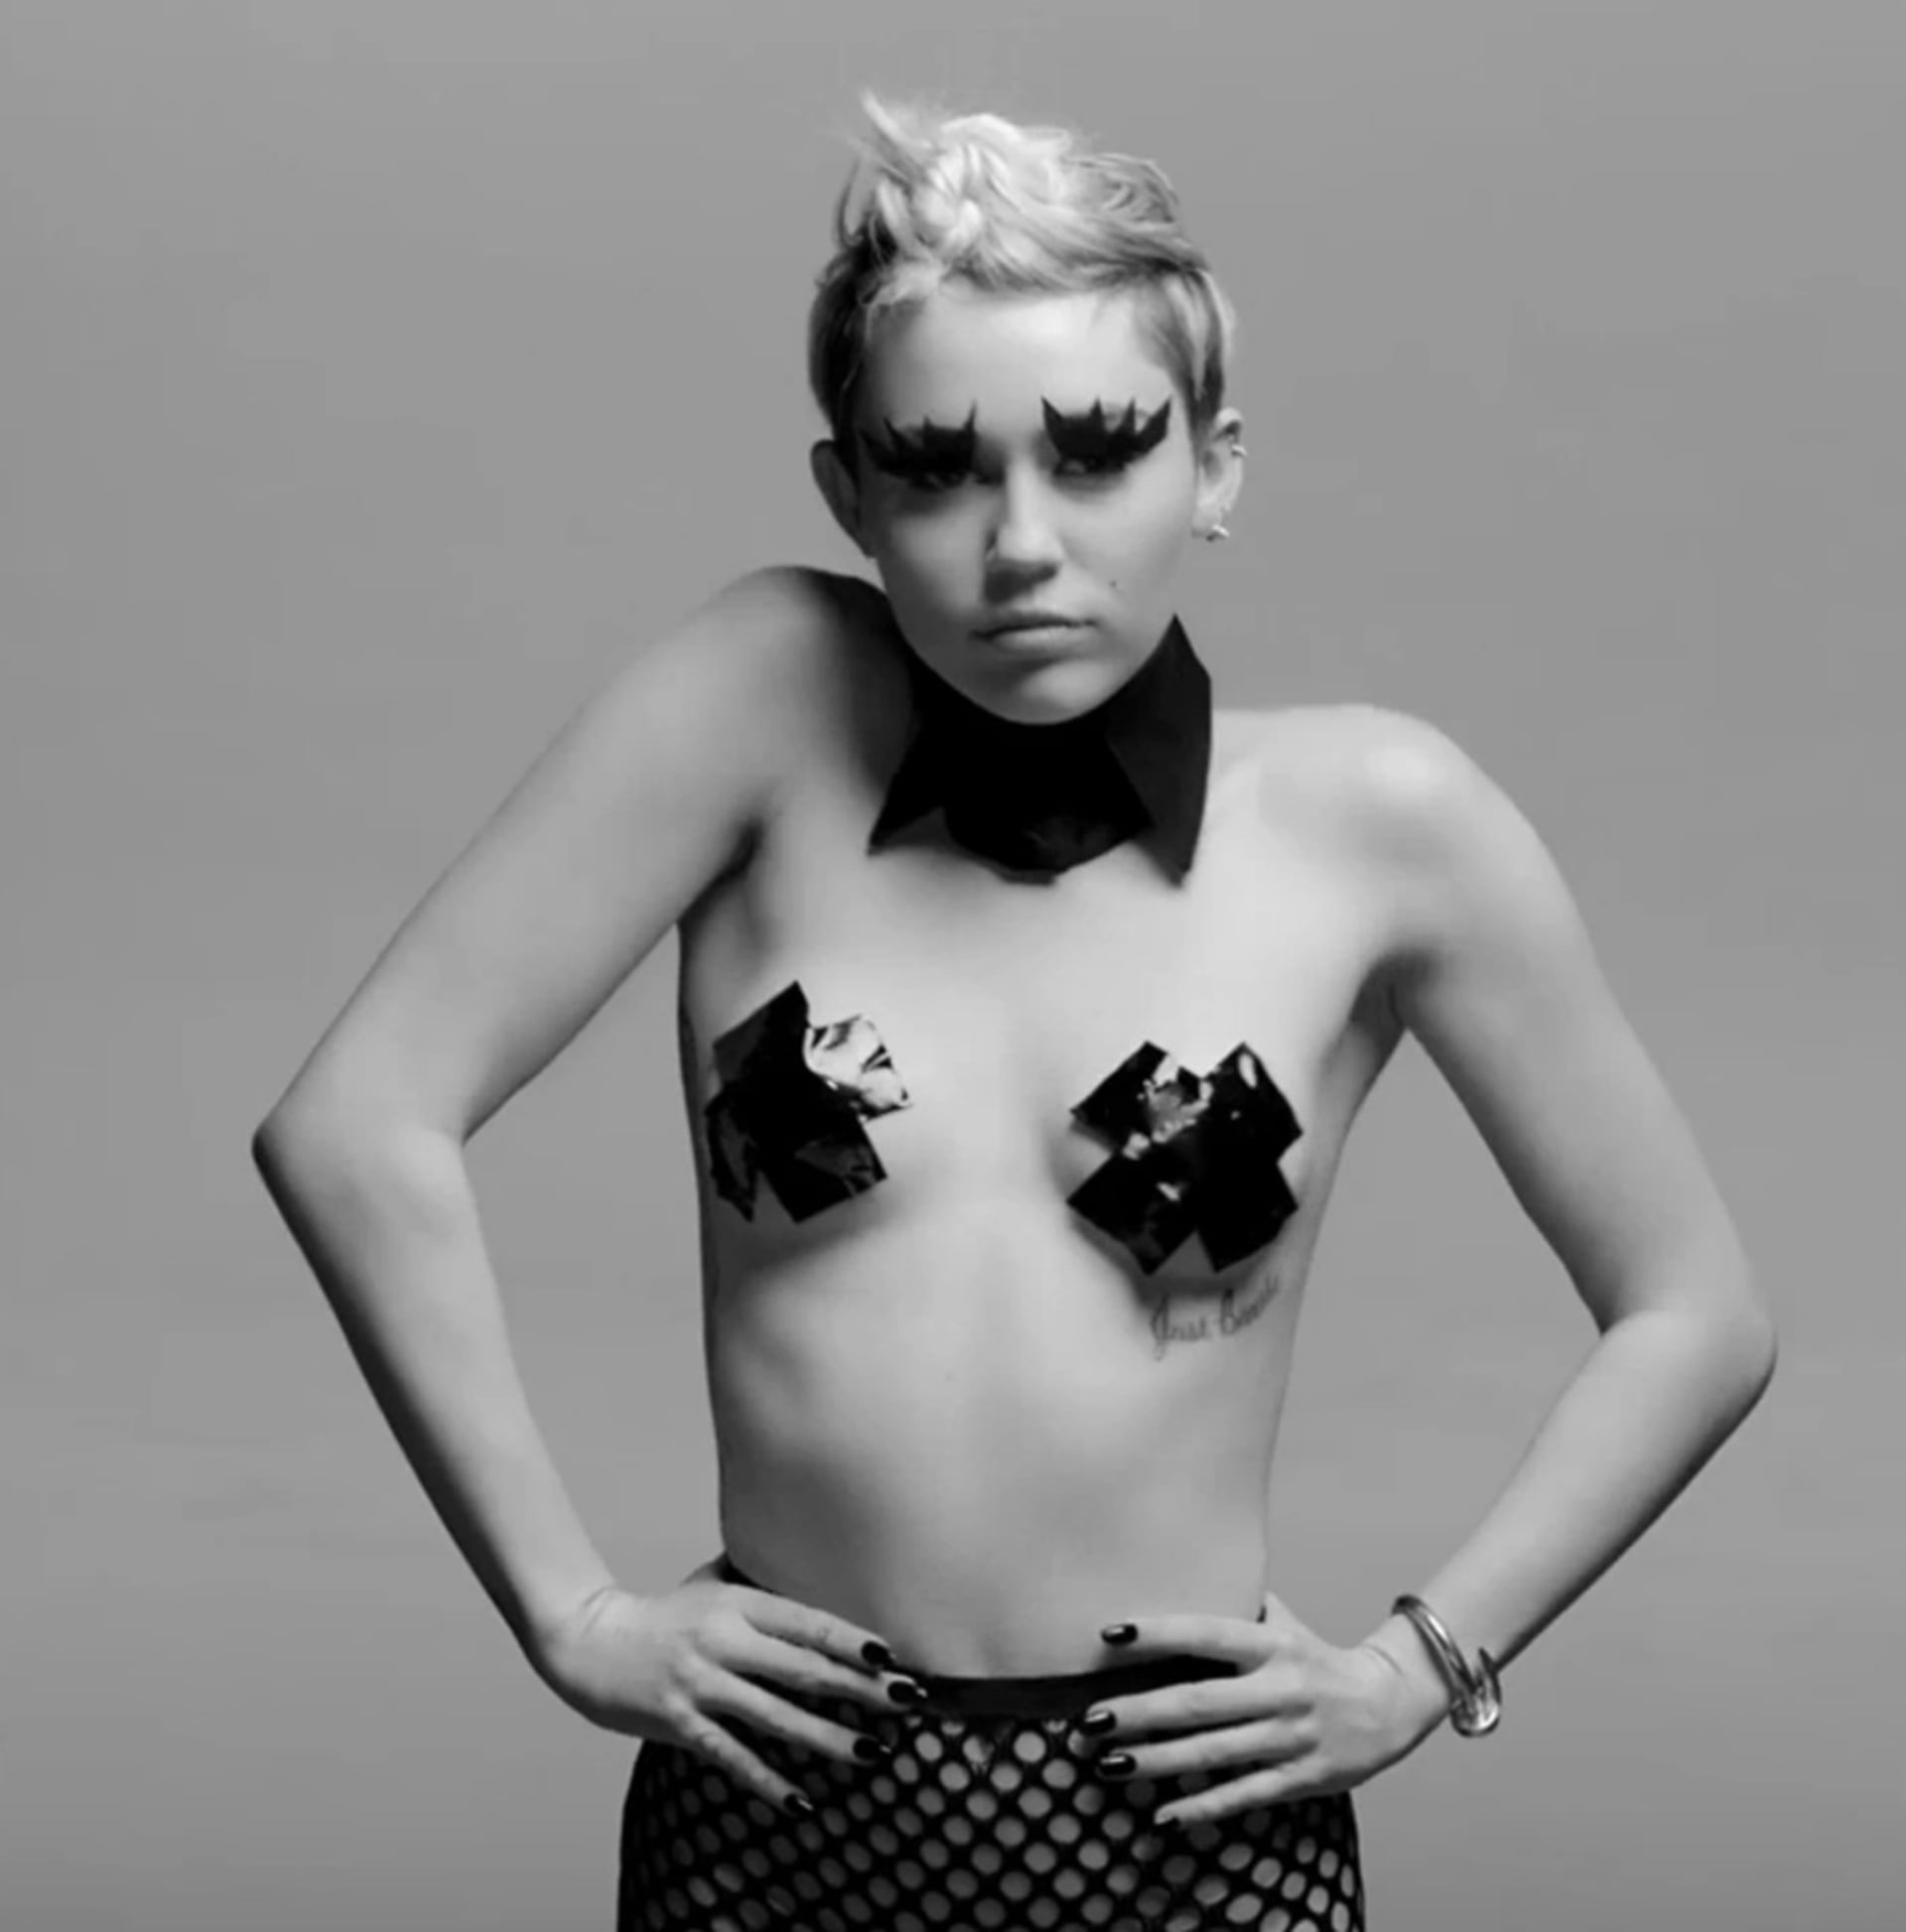 Miley Cyrus během svého divočejšího období, kdy se nebála pravidelně provokovat. V tomto videu si tehdy 21letá zpěvačka přelepila prsa lepící páskou.